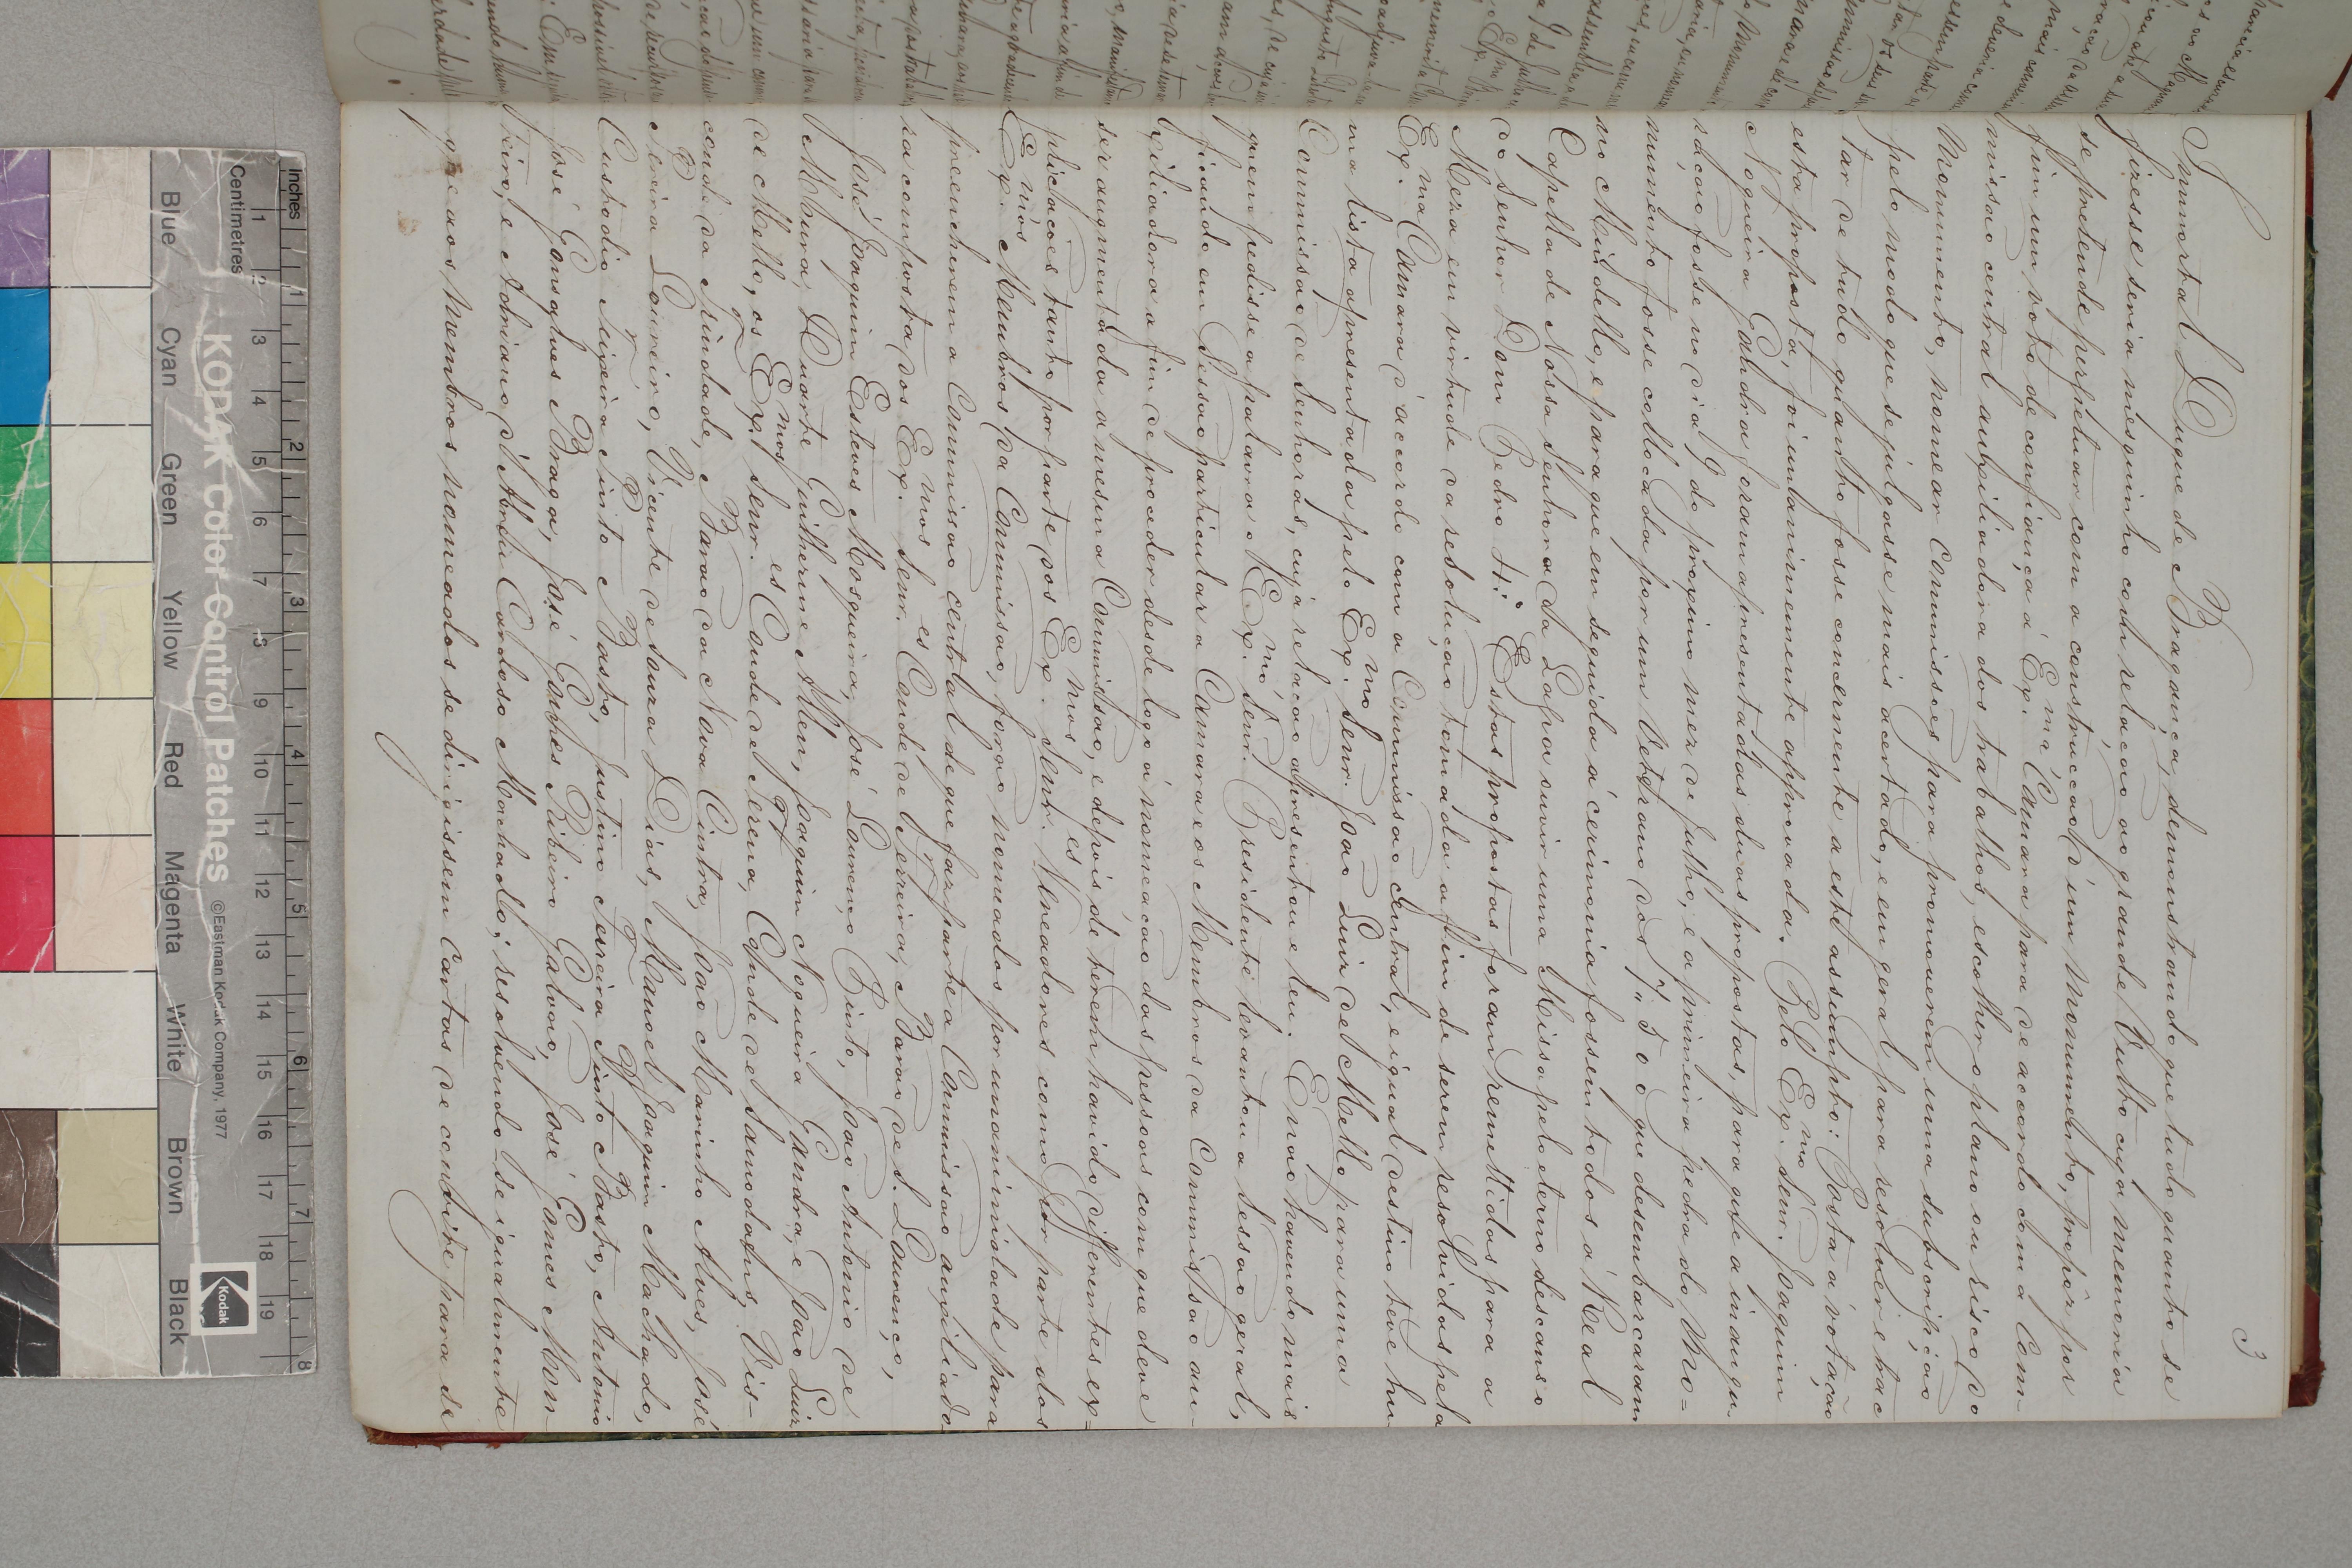 Sessão da Comissão do Monumento ao Senhor D. Pedro 4º, de 23 de Junho de 1862